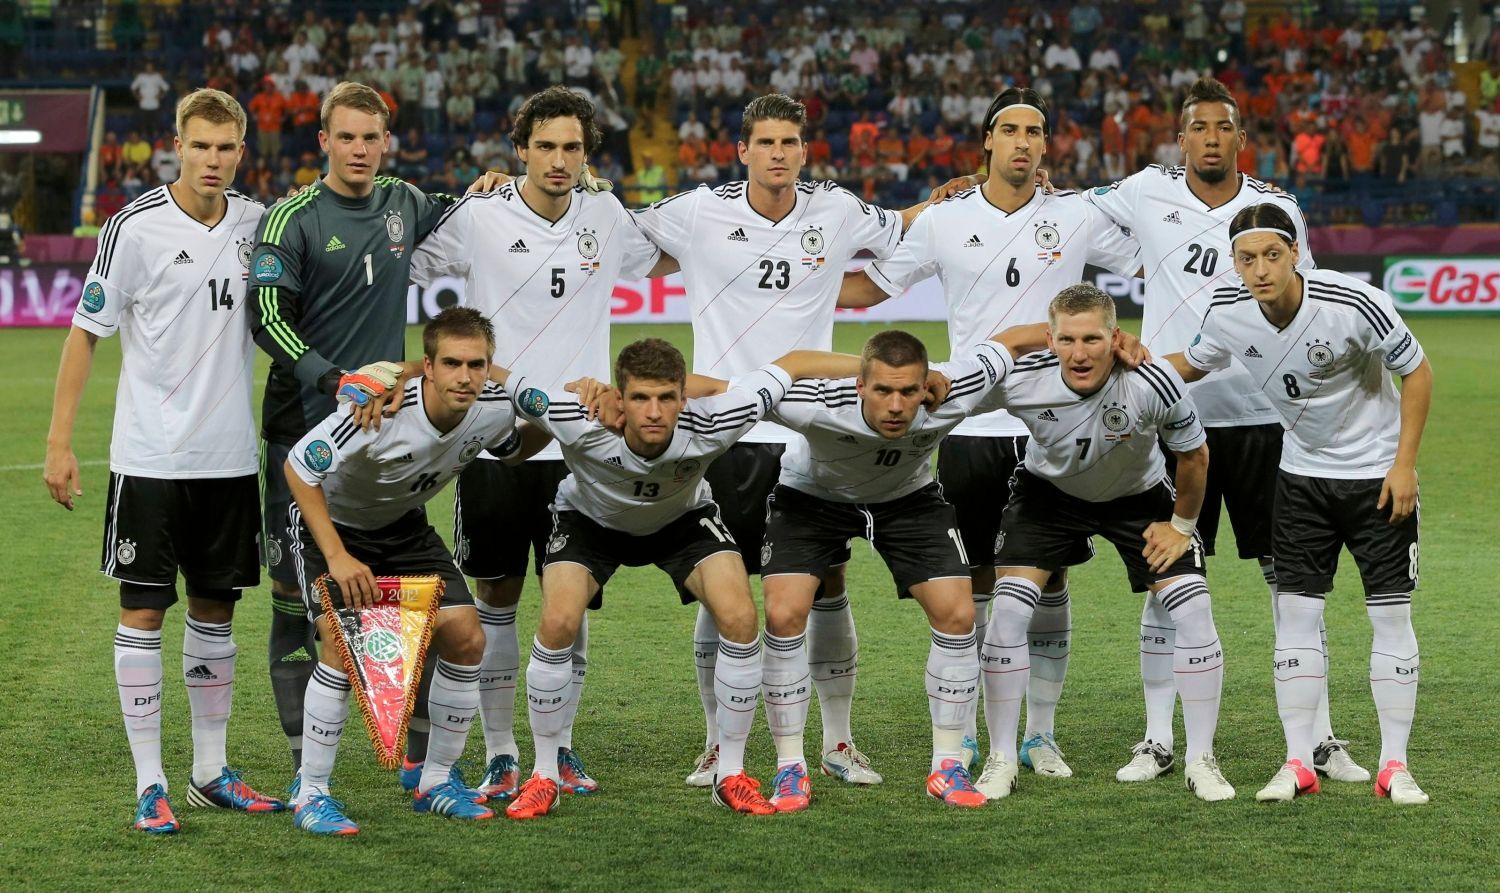 Německý tým před utkáním Nizozemska s Německem na Euru 2012